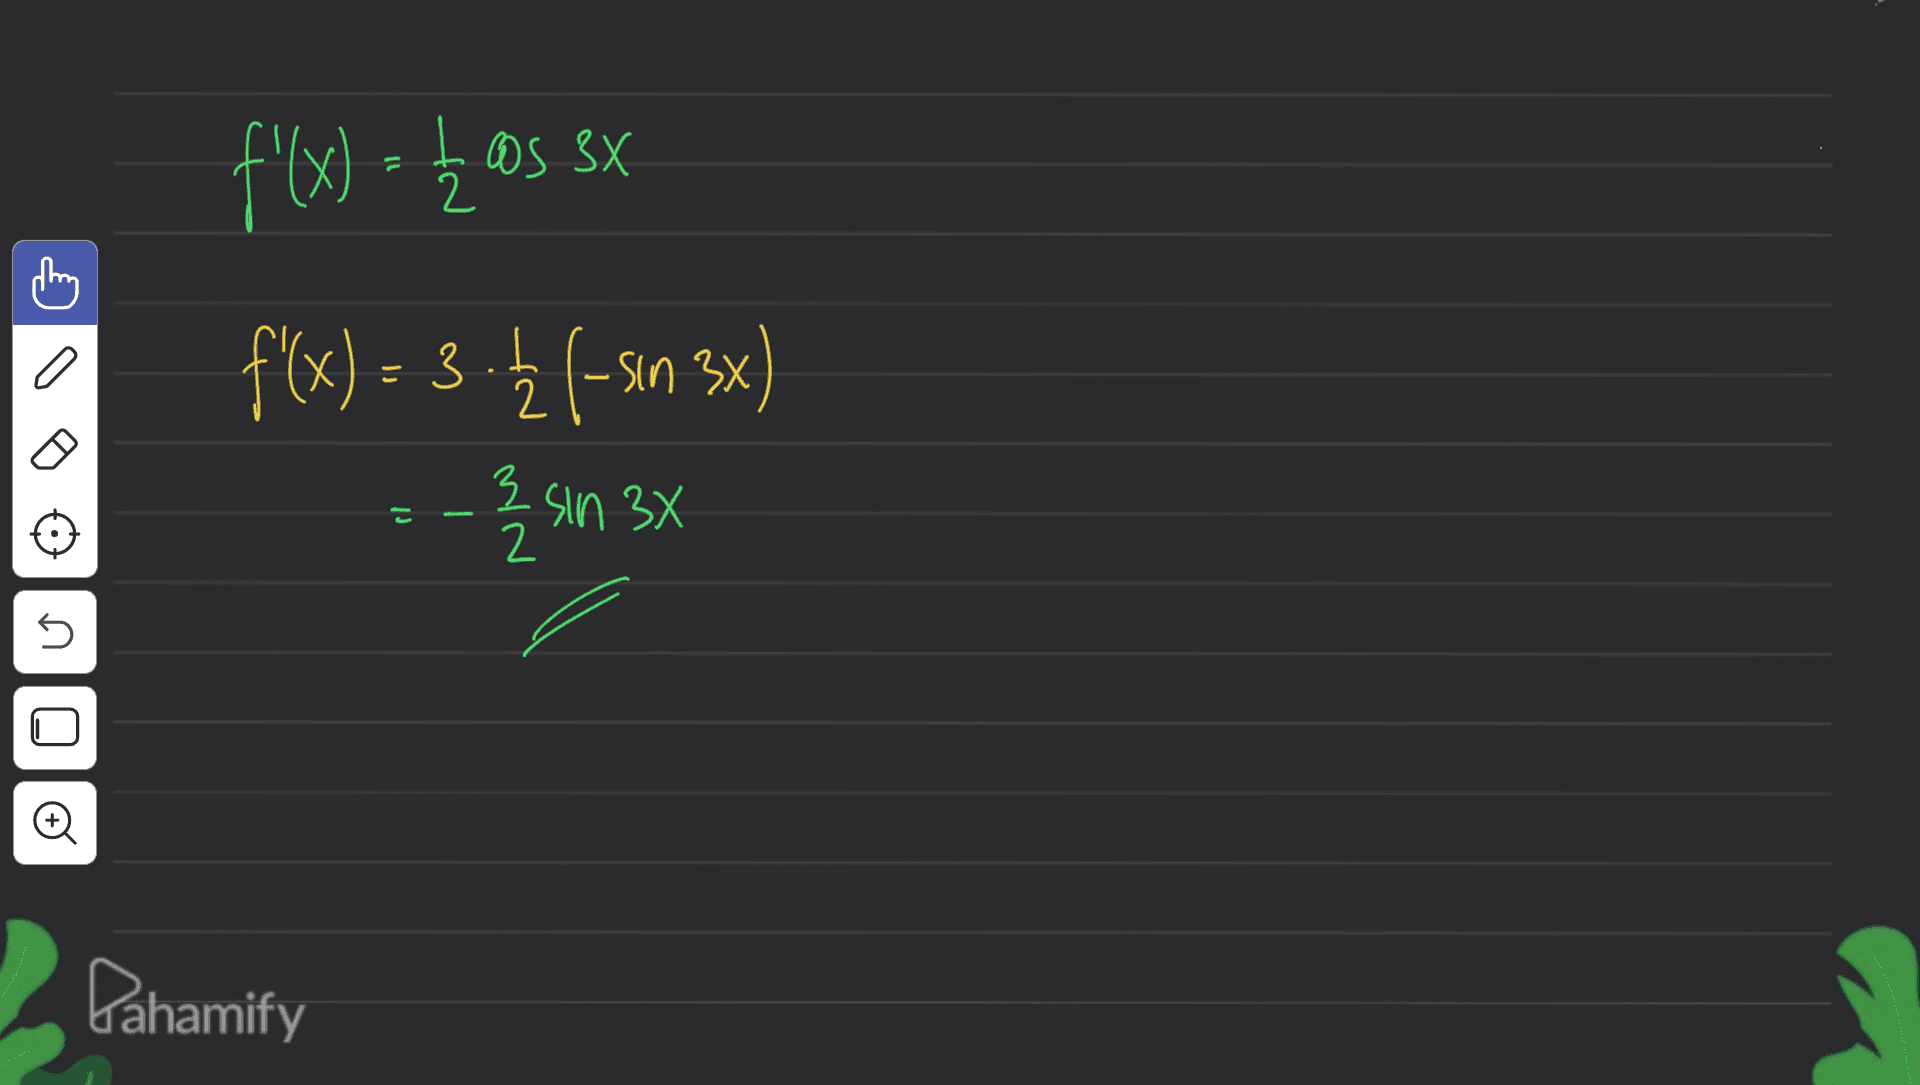 f'(x) = { as ex 2 a こ I 2 ) f(x) = 3 - (-50 3x) -sin ) --- % 3 sin 3x 2 5 Đ Pahamify 